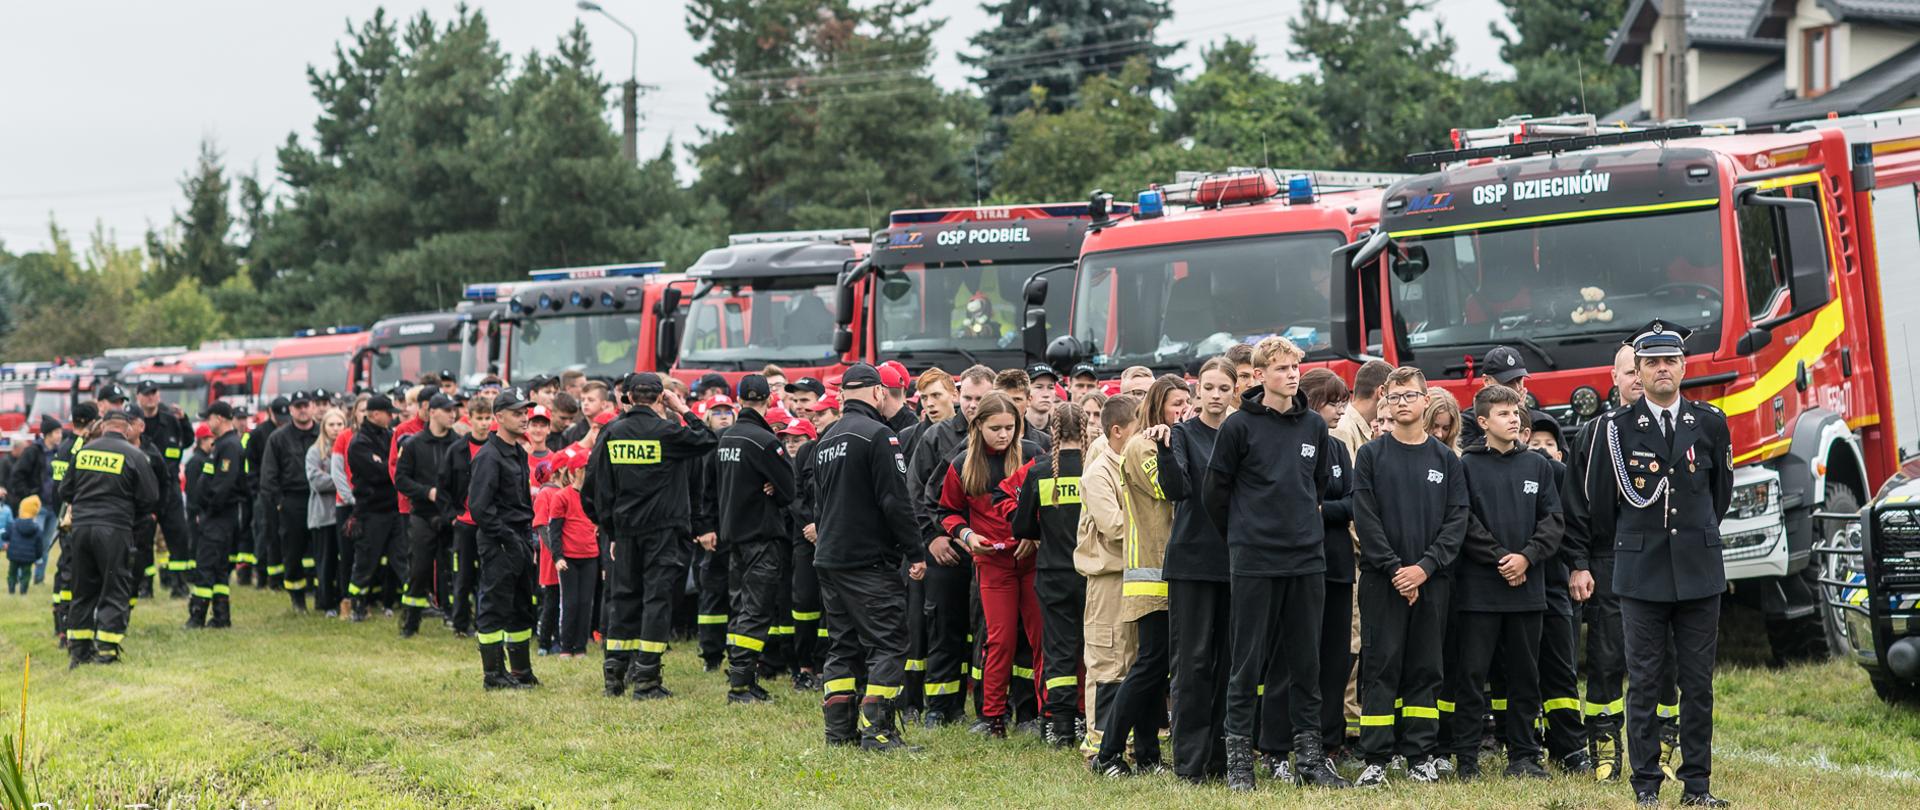 Na zdjęciu uczestnicy zawodów młodzieżowych drużyn pożarniczych na tle pojazdów gaśniczych